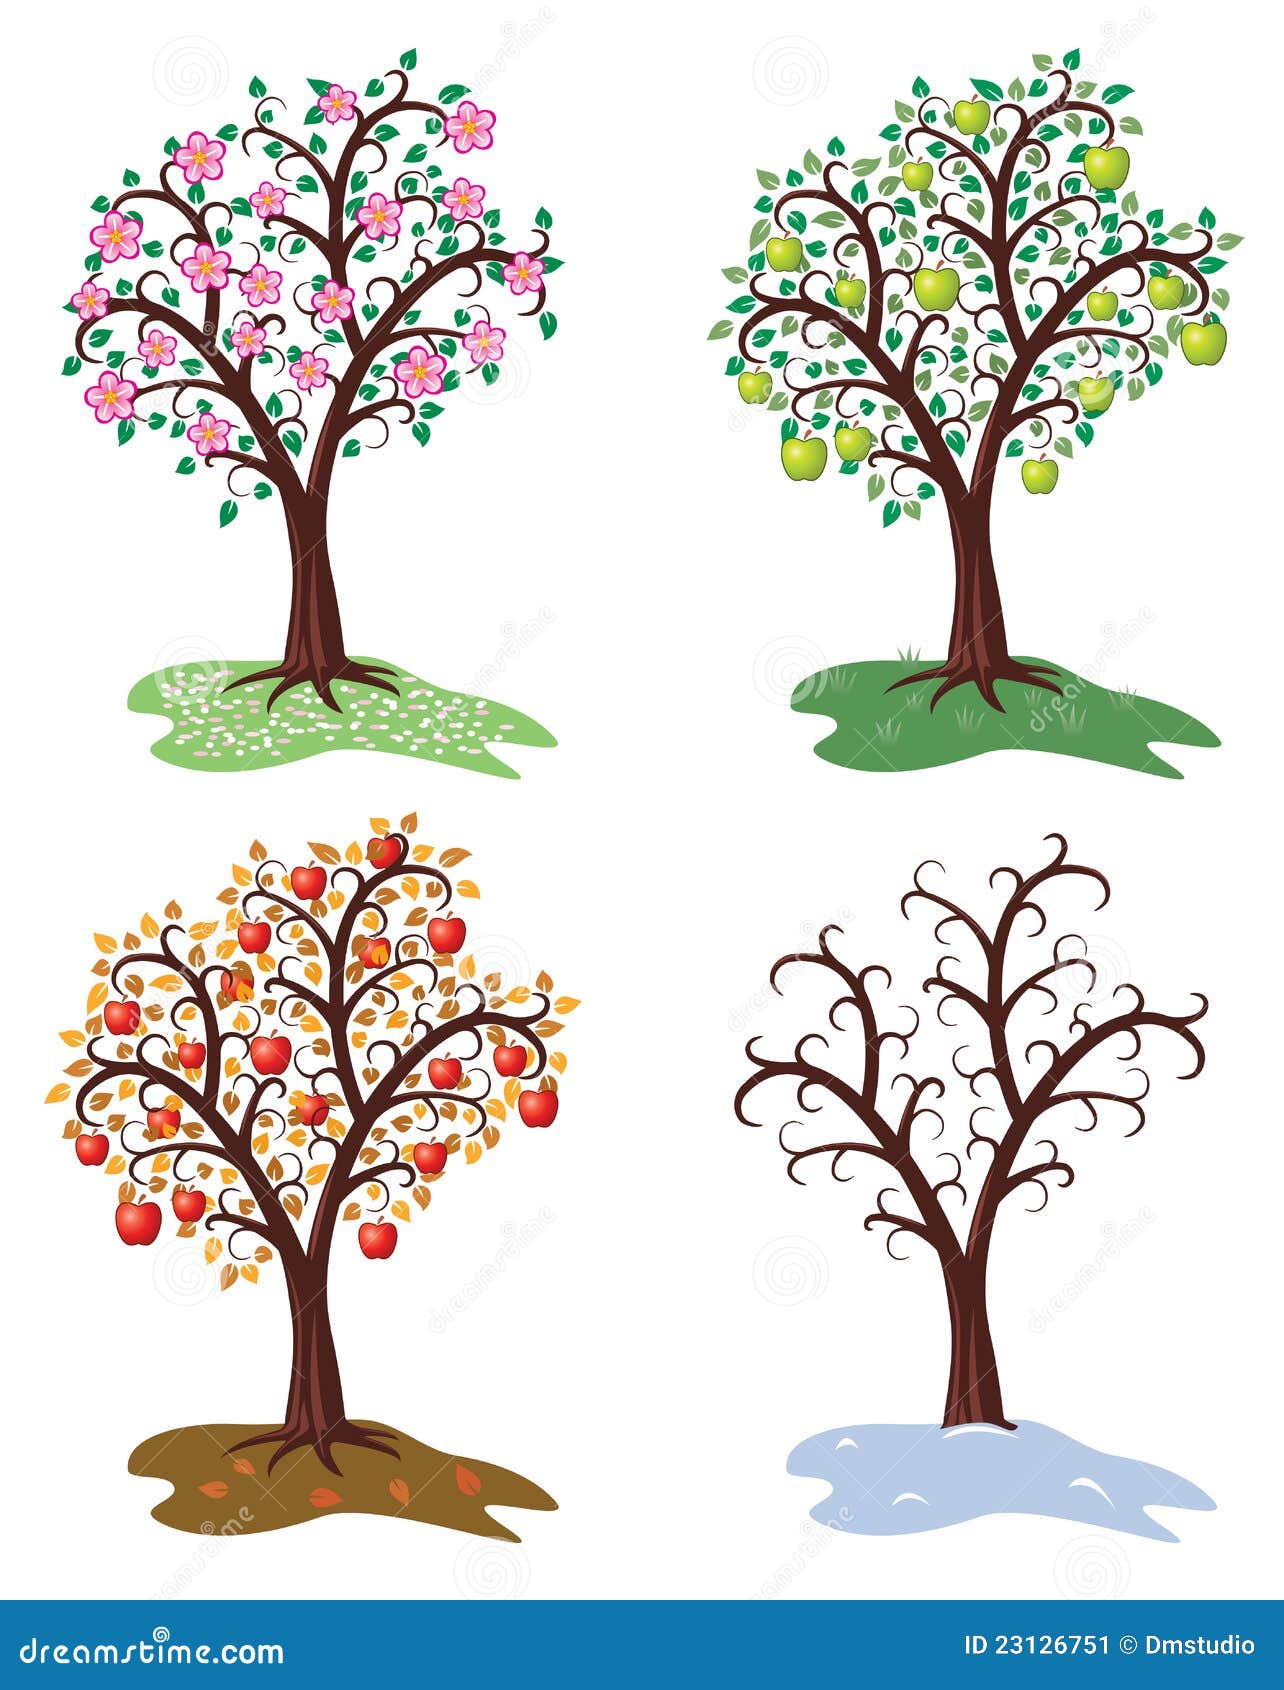 Яблоня в разные времена года. Рисование яблони зимой для детей. Яблоня в цвету дерево для распечатывания. Весеннее дерево яблоня для детей.